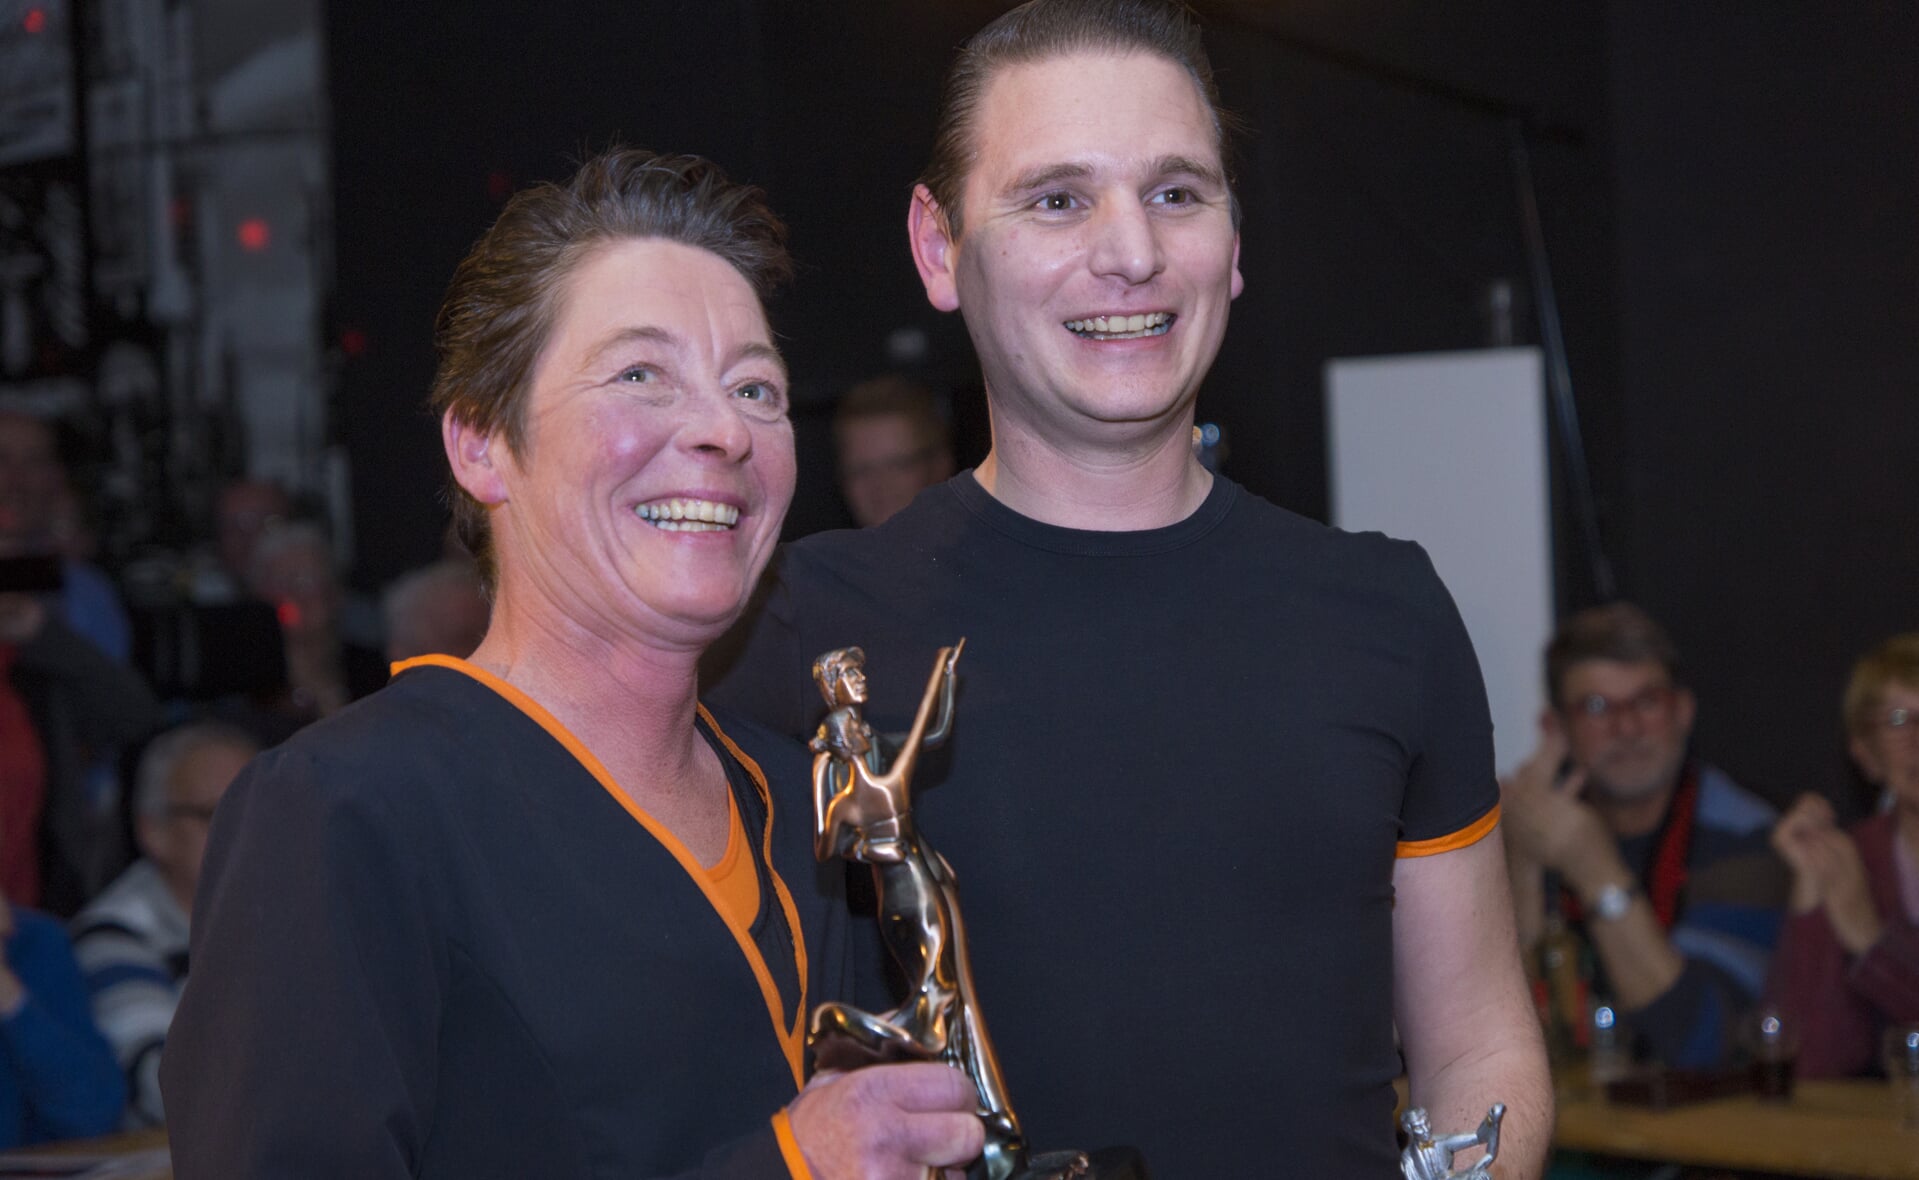 Rian de Bie van lunchroom Wendy's en danspartner Mike van der Heijden wonnen vorig jaar Denziz with the Stars. (Foto: Daisy Renders).